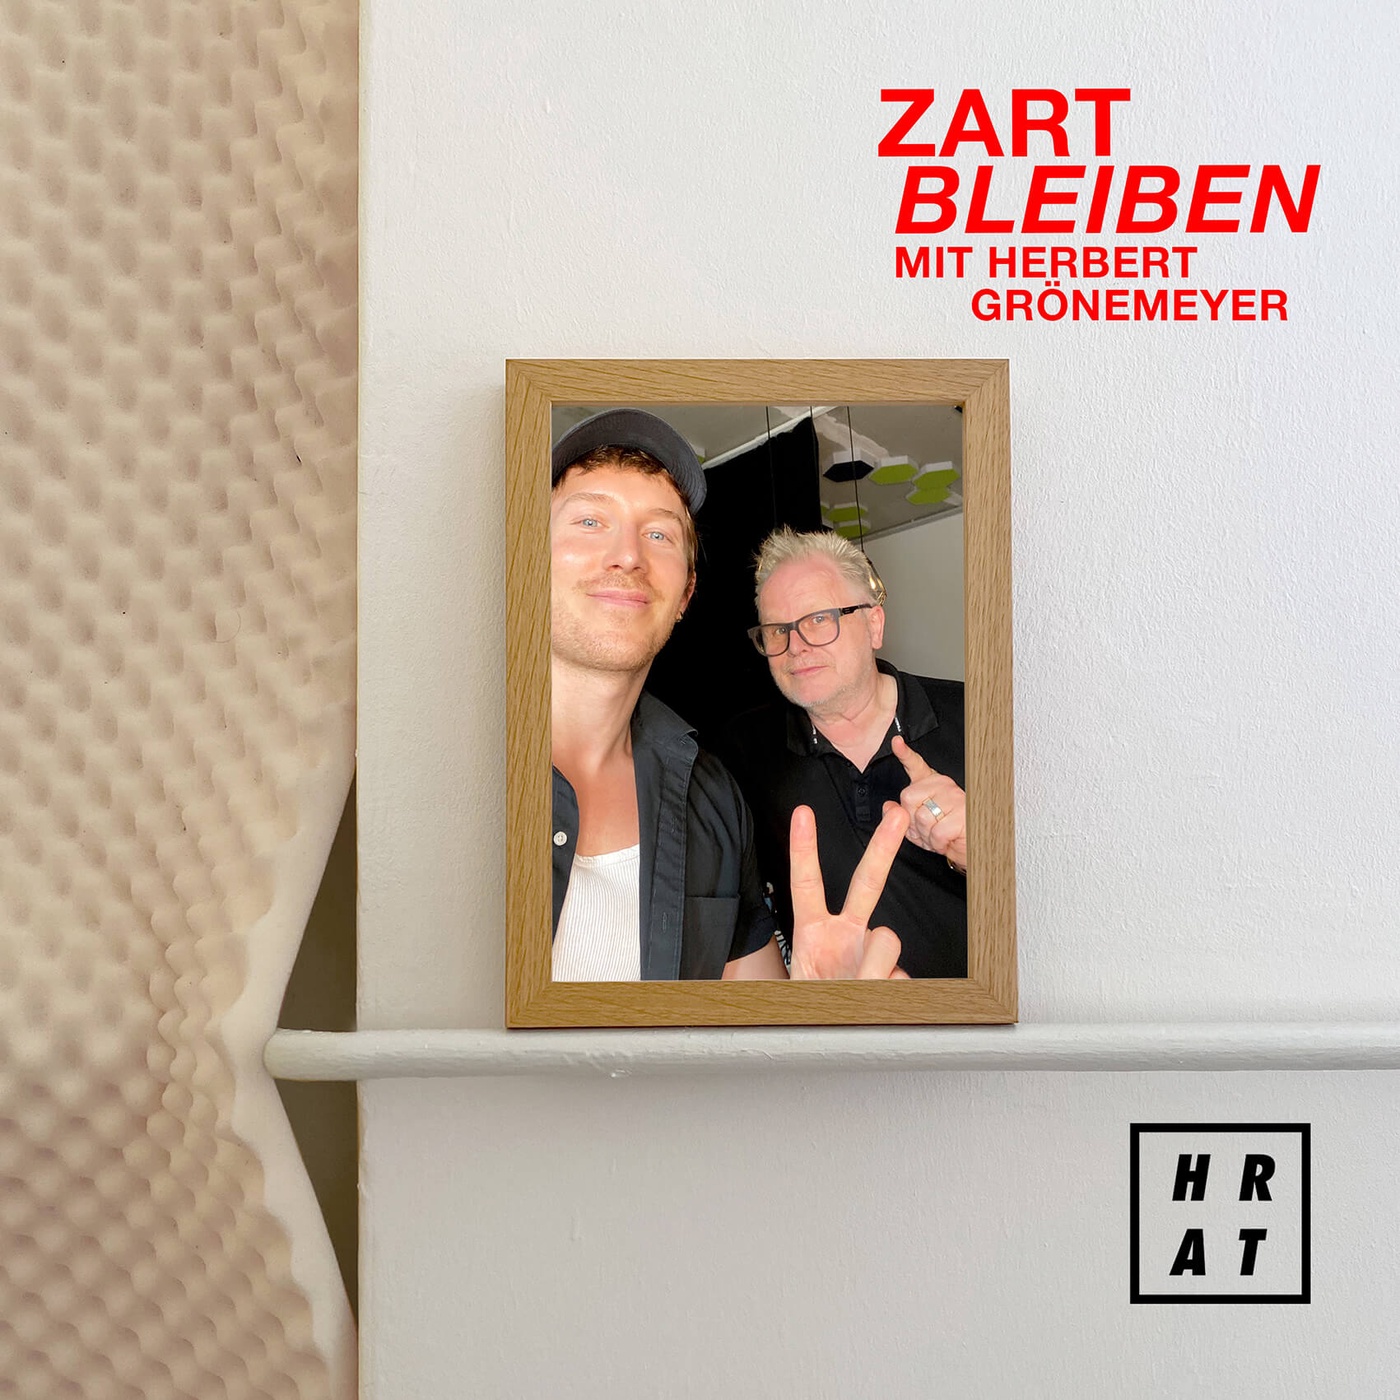 1.3 Zart Bleiben - mit Herbert Grönemeyer